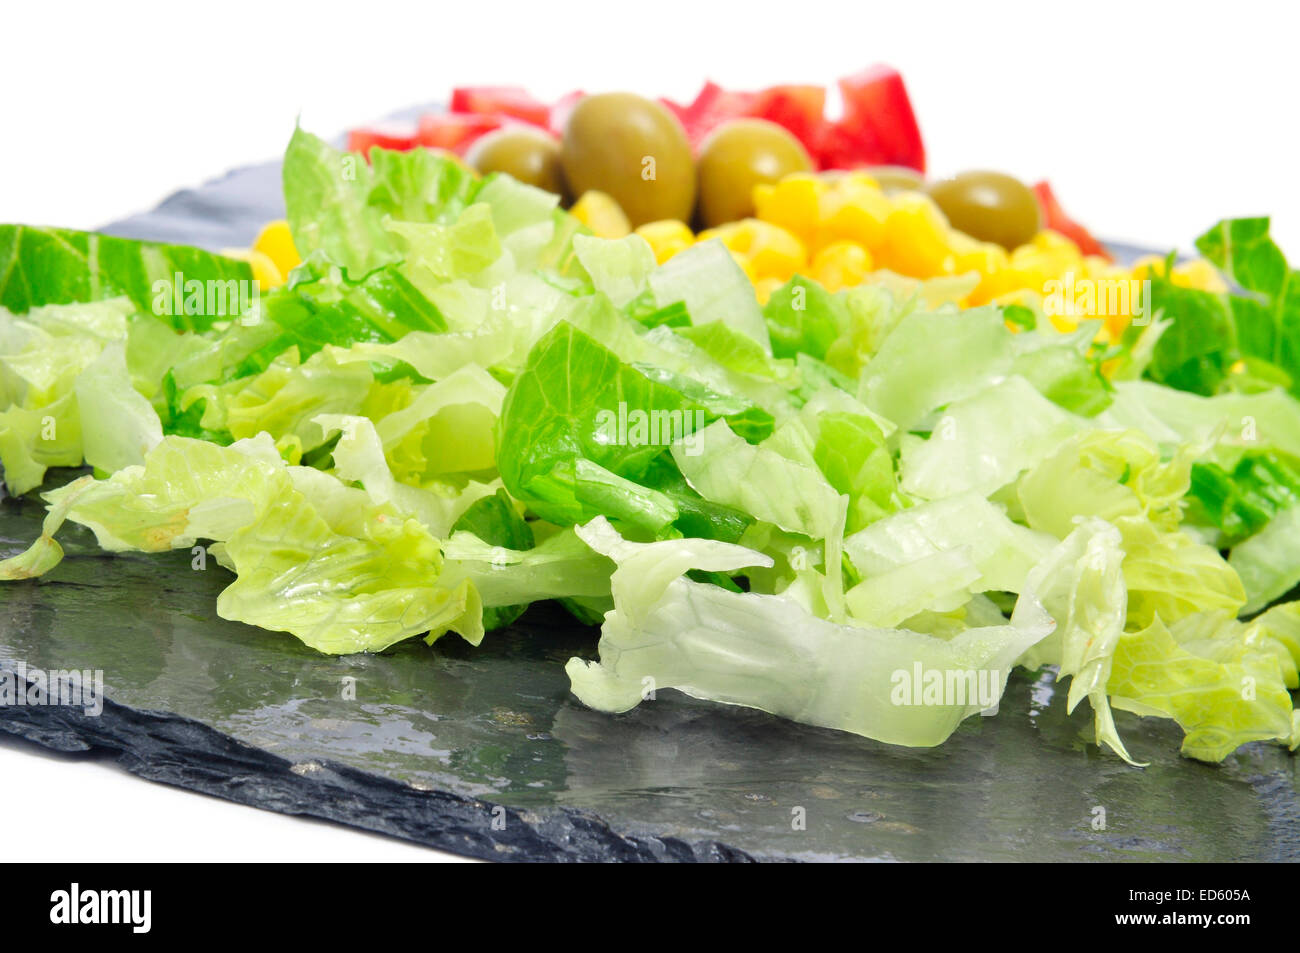 Libre de certains ingrédients, comme la laitue, maïs, olives et tomates, sur une surface en ardoise Banque D'Images